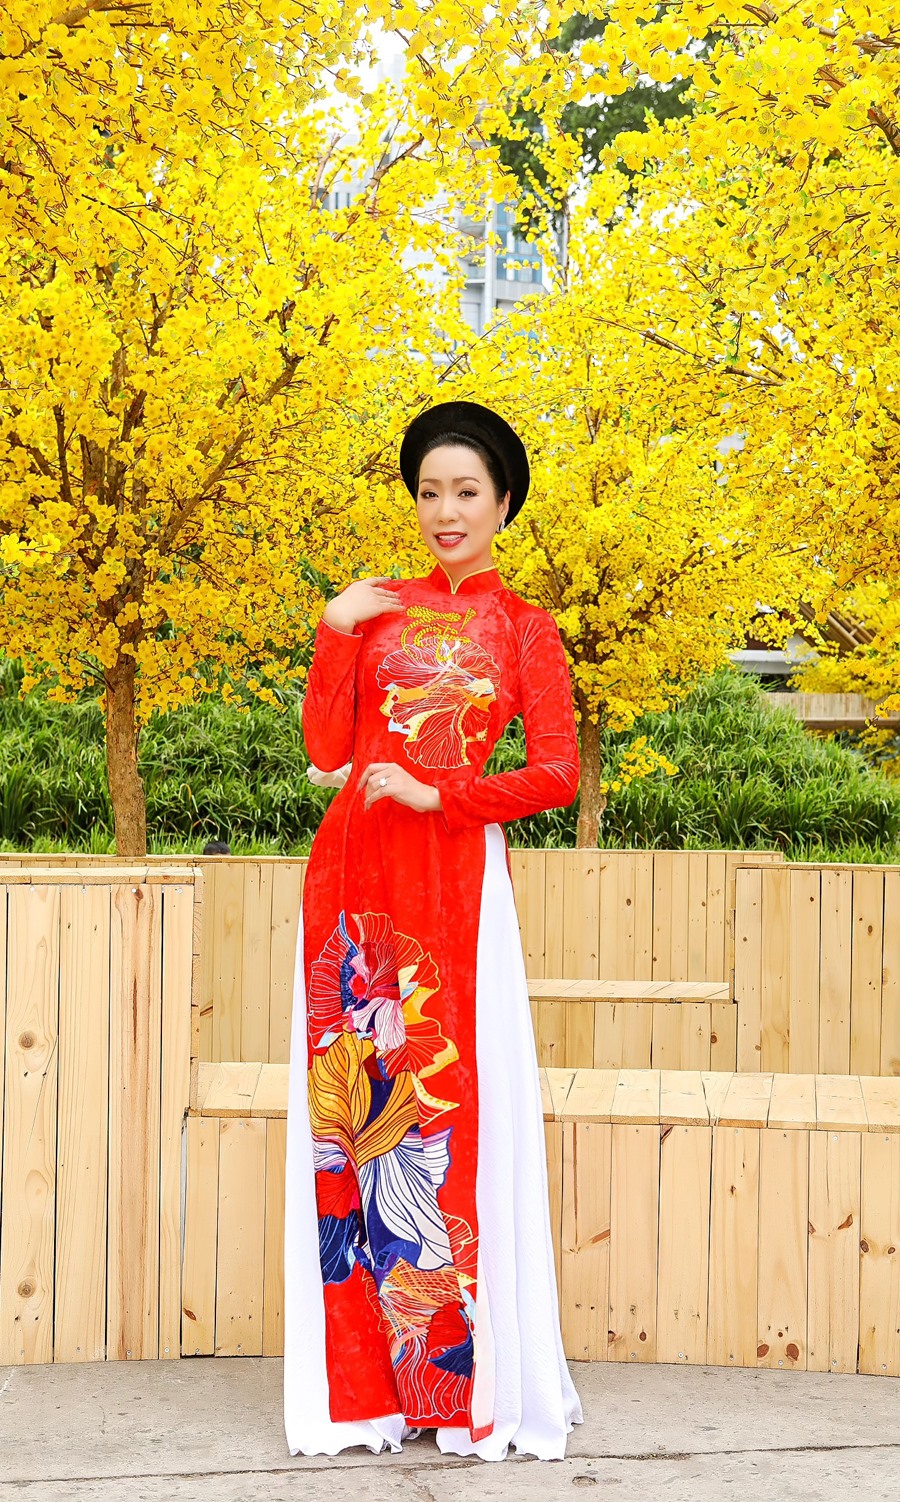 NSƯT Trịnh Kim Chi chọn những chiếc đầm hoa rực rỡ, hòa vào bối cảnh kết hợp giữa truyền thống và hiện đại, đúng với không khí của ngày Tết.